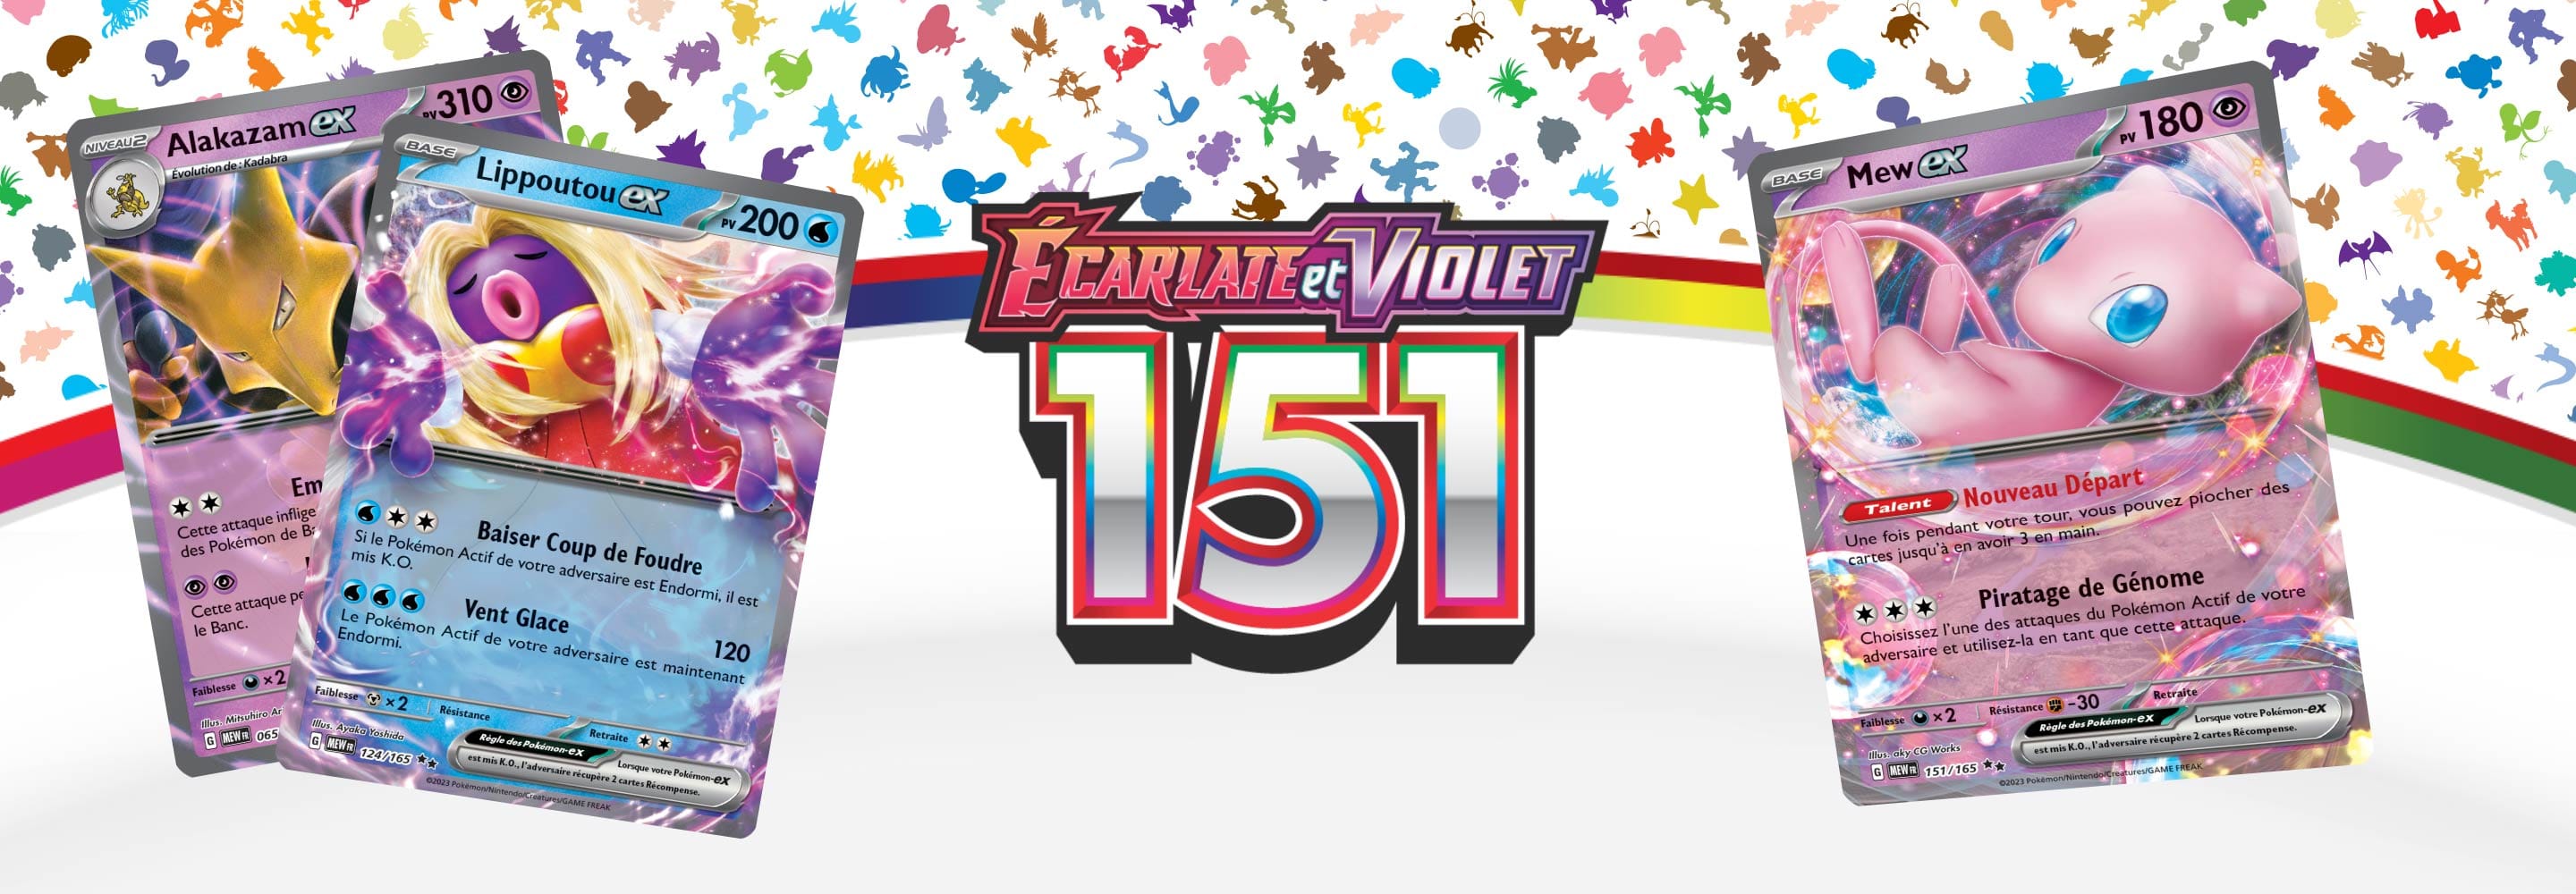 L'extension Écarlate et Violet 151 du JCC Pokémon se dévoile - Margxt